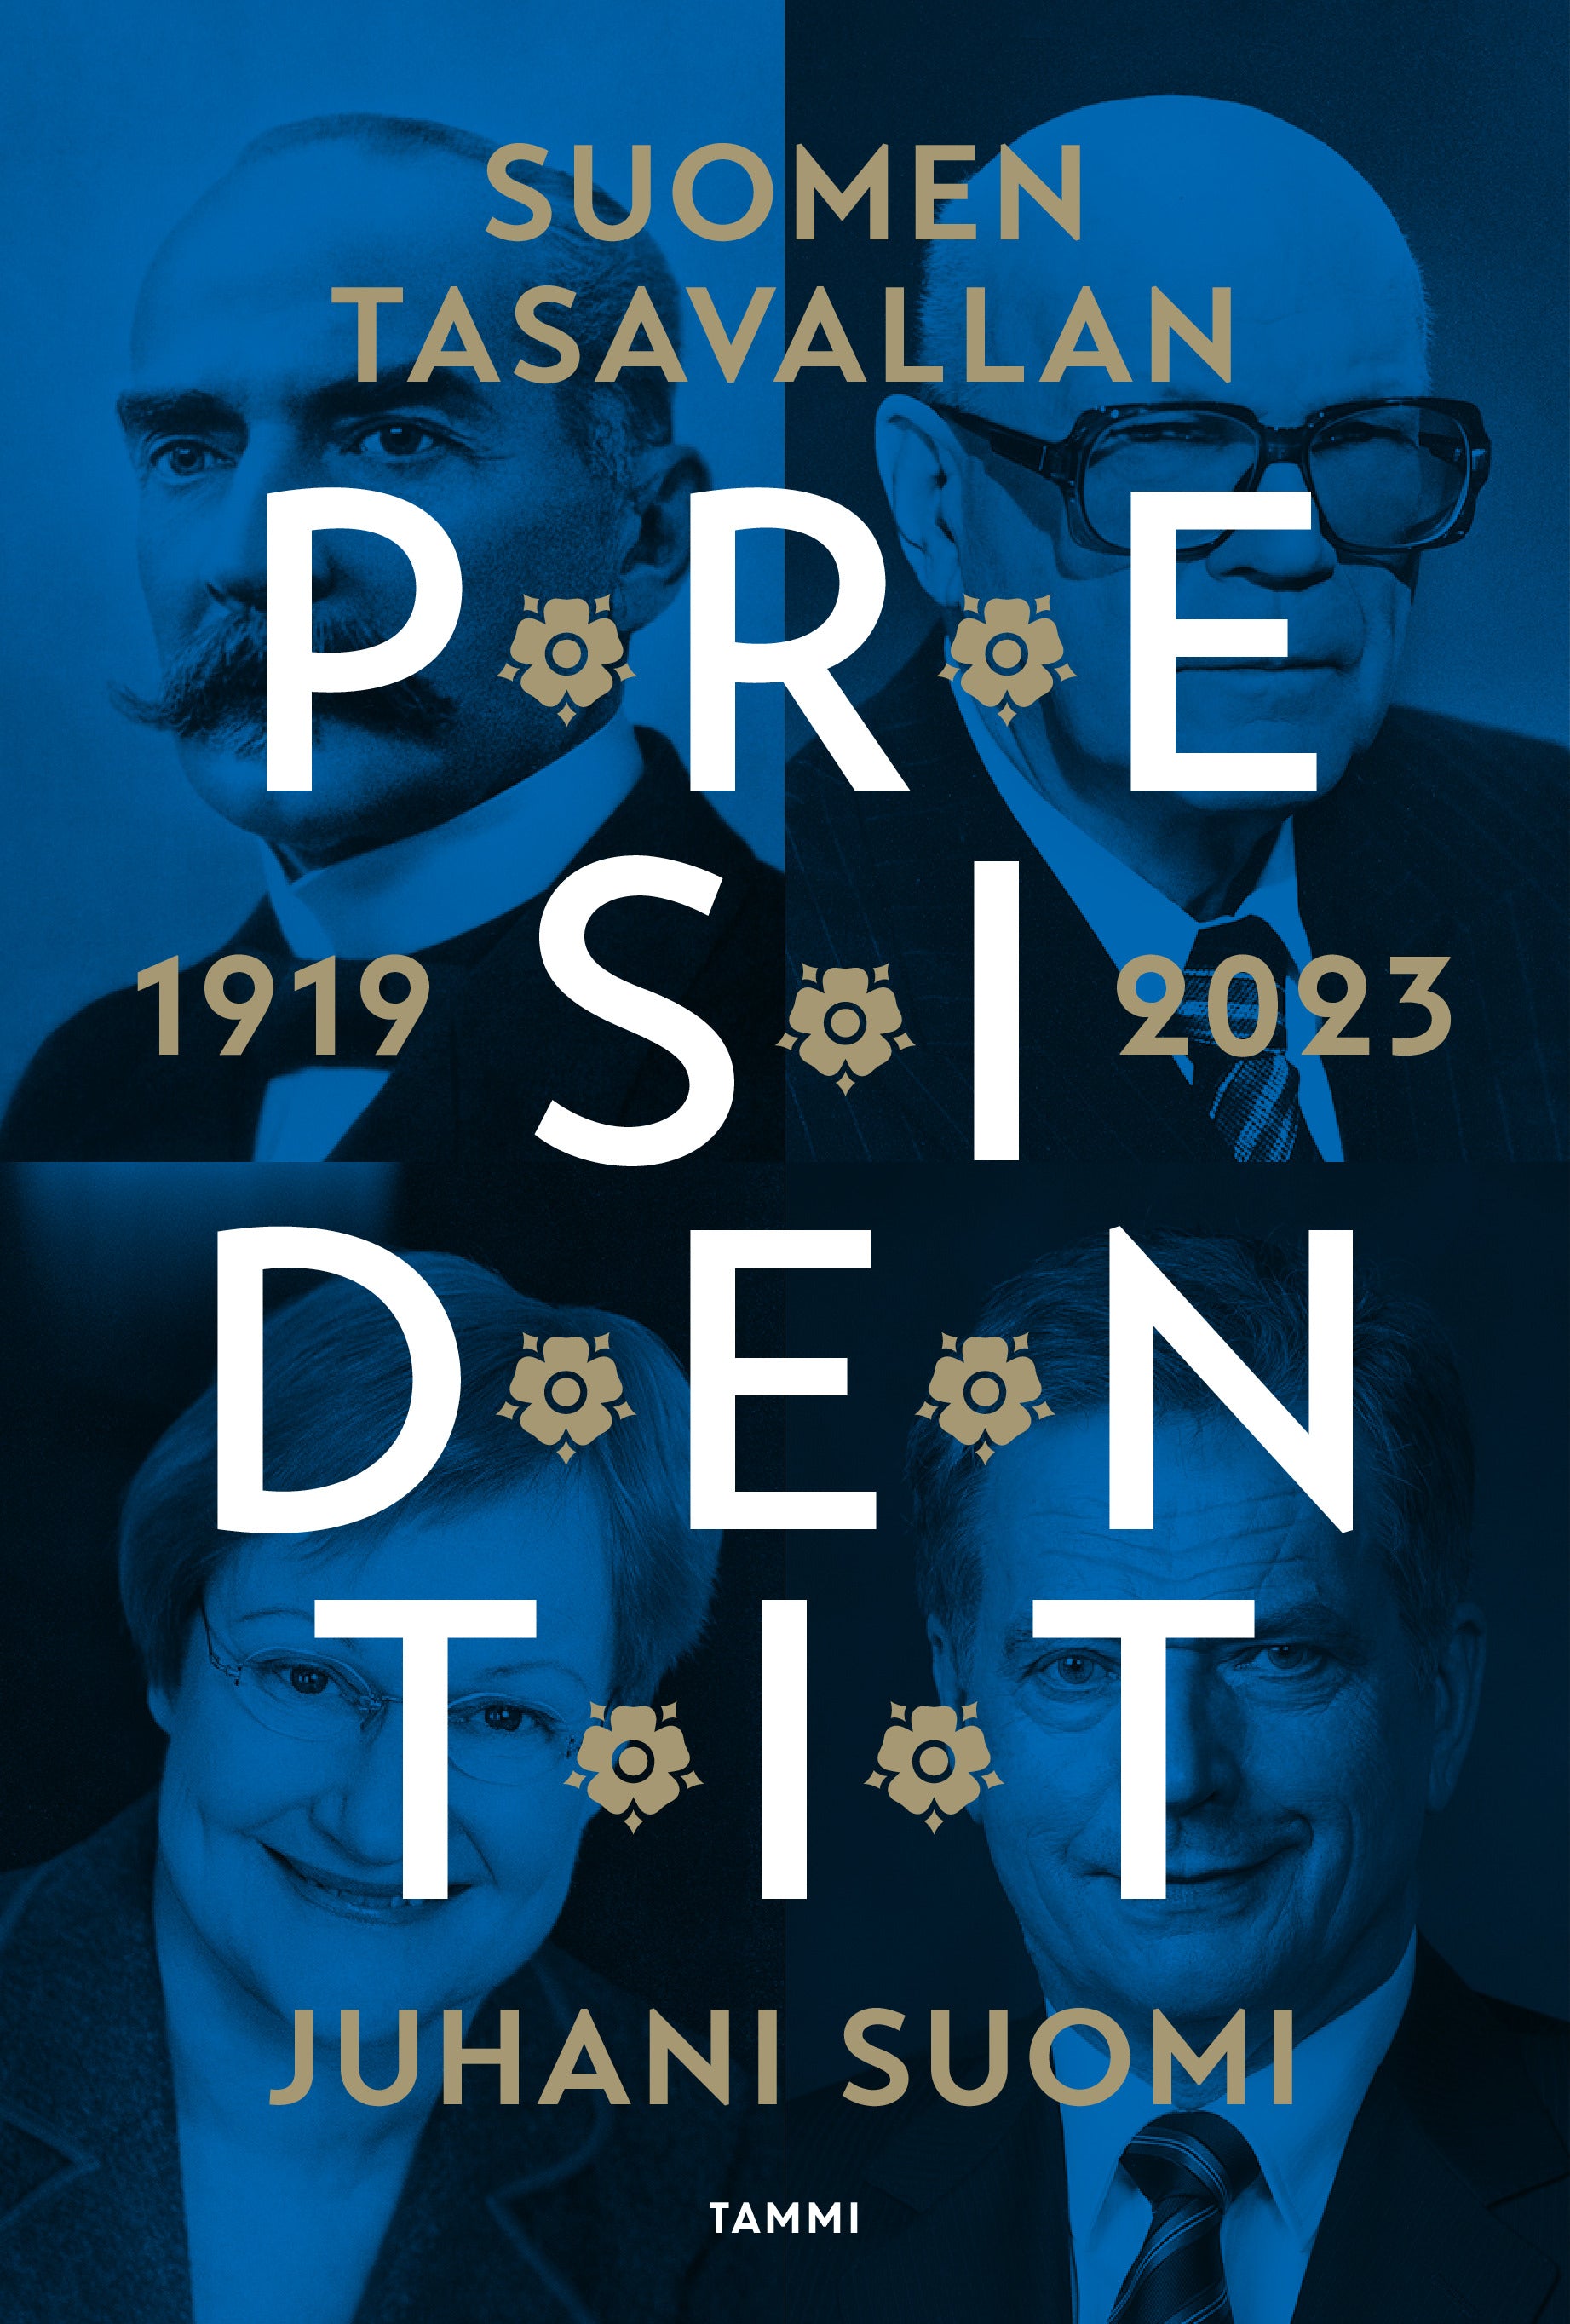 Suomen tasavallan presidentit 1919-2023 – Juhani Suomi – Kirja-verkkokauppa